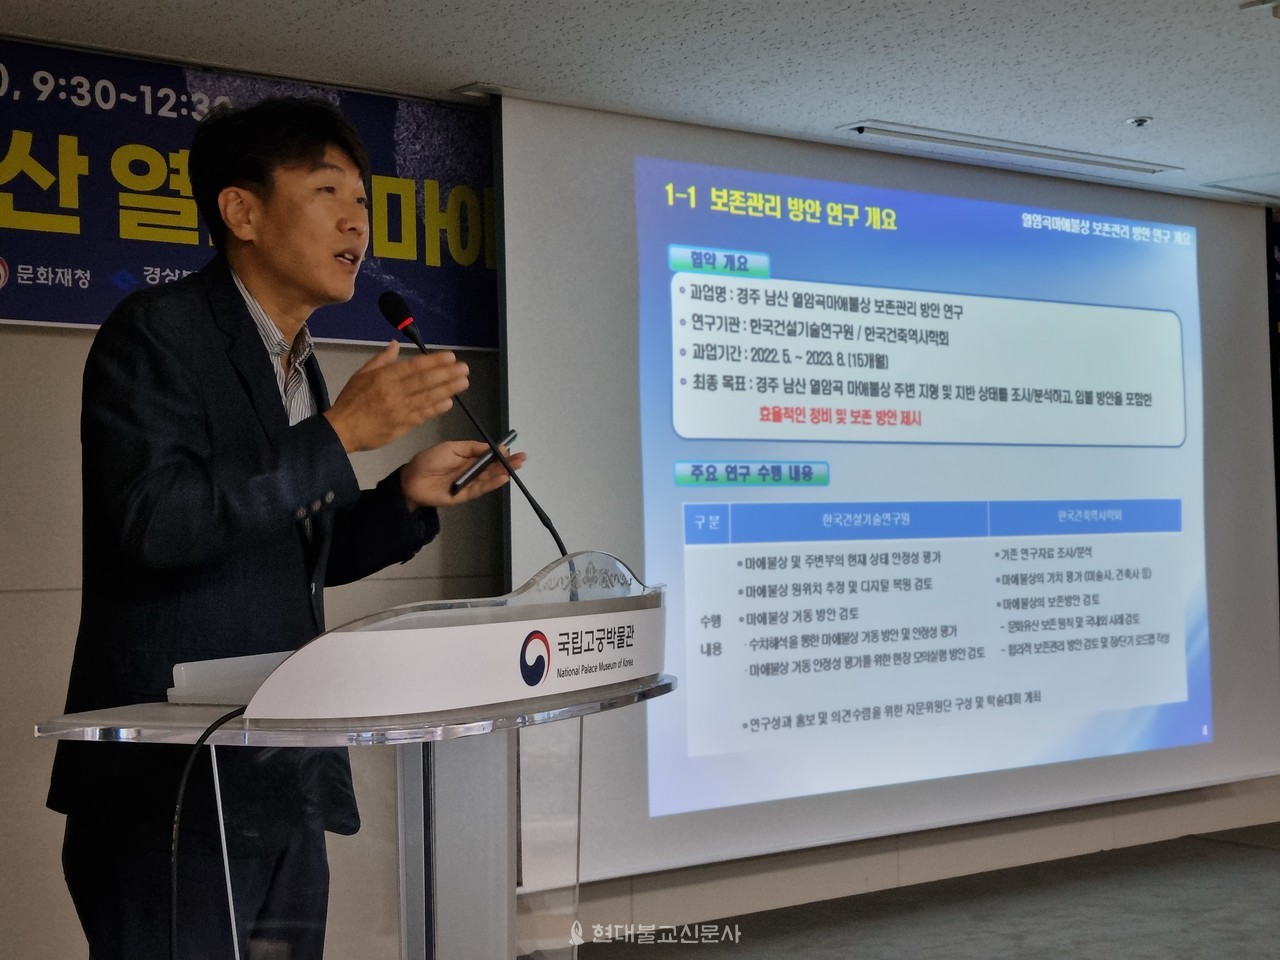 첫 번째 발제자인 이광우 한국건설기술연구원이 연구 결과에 대해 발표를 하고 있다. 그는 마애불상의 위치와 방향, 거동방안을 발표했다.